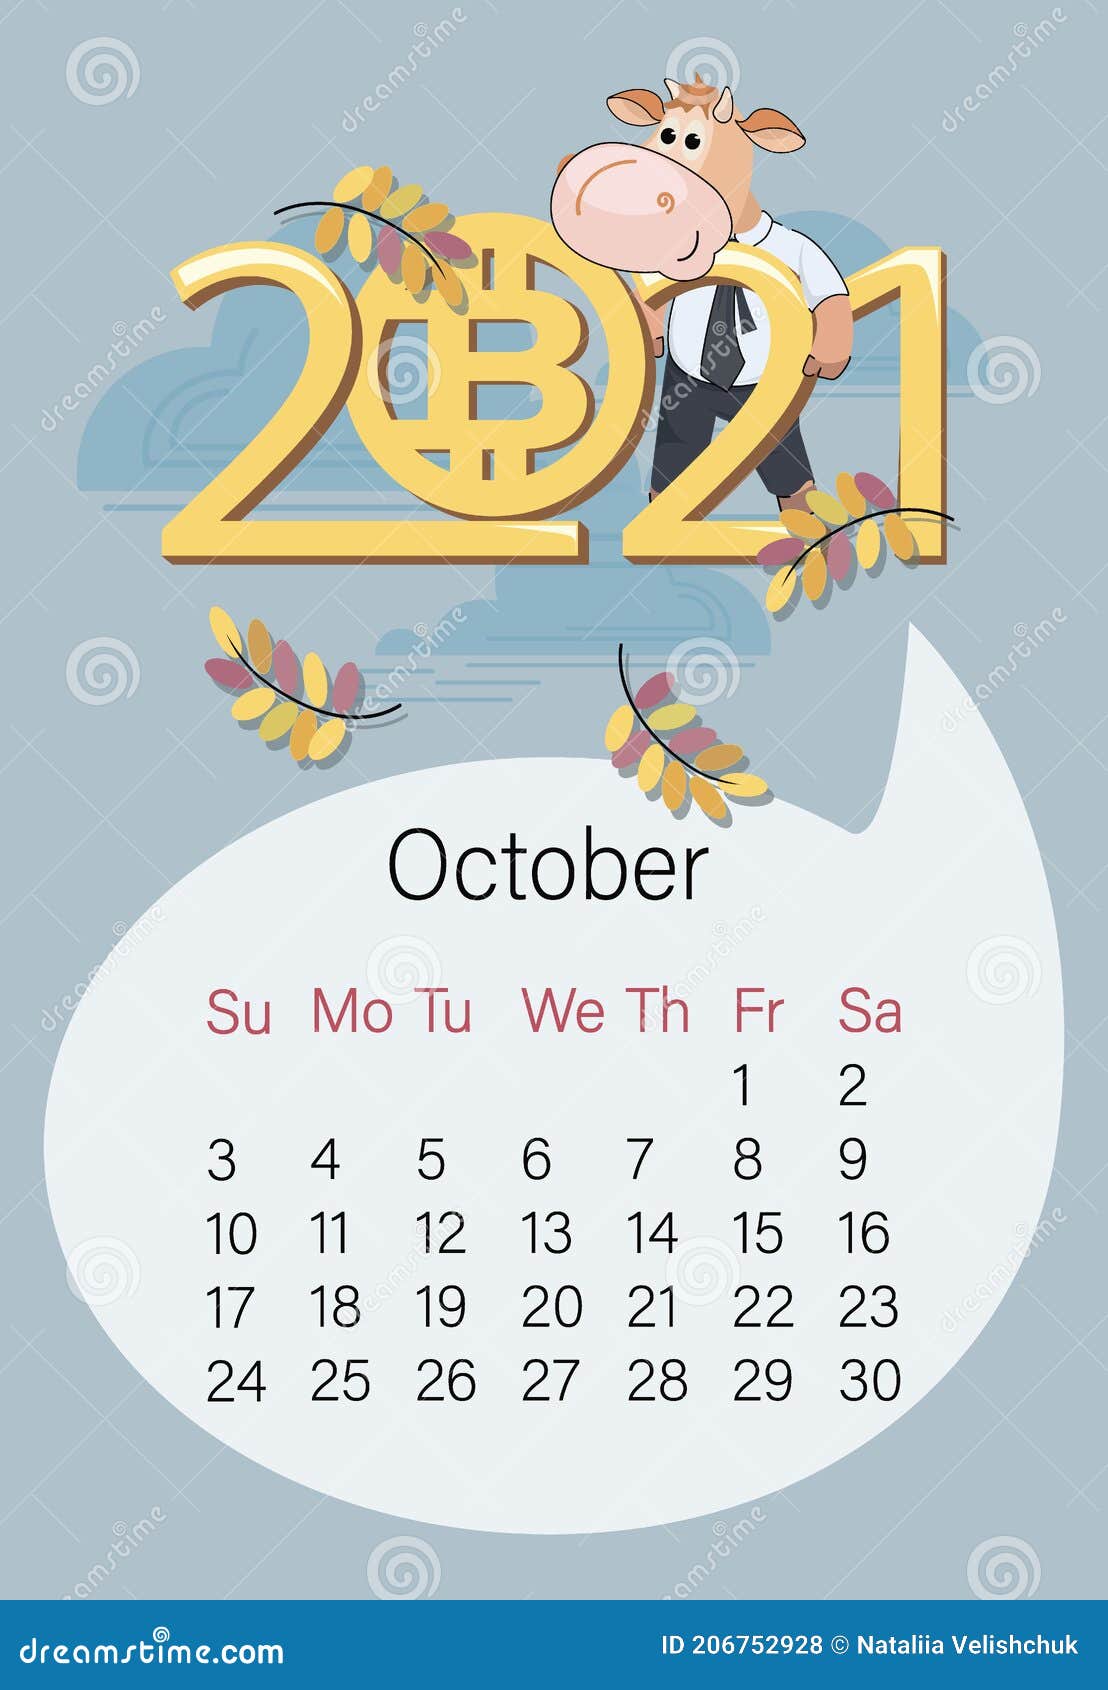 Calendario economico | Bitcoin World ita